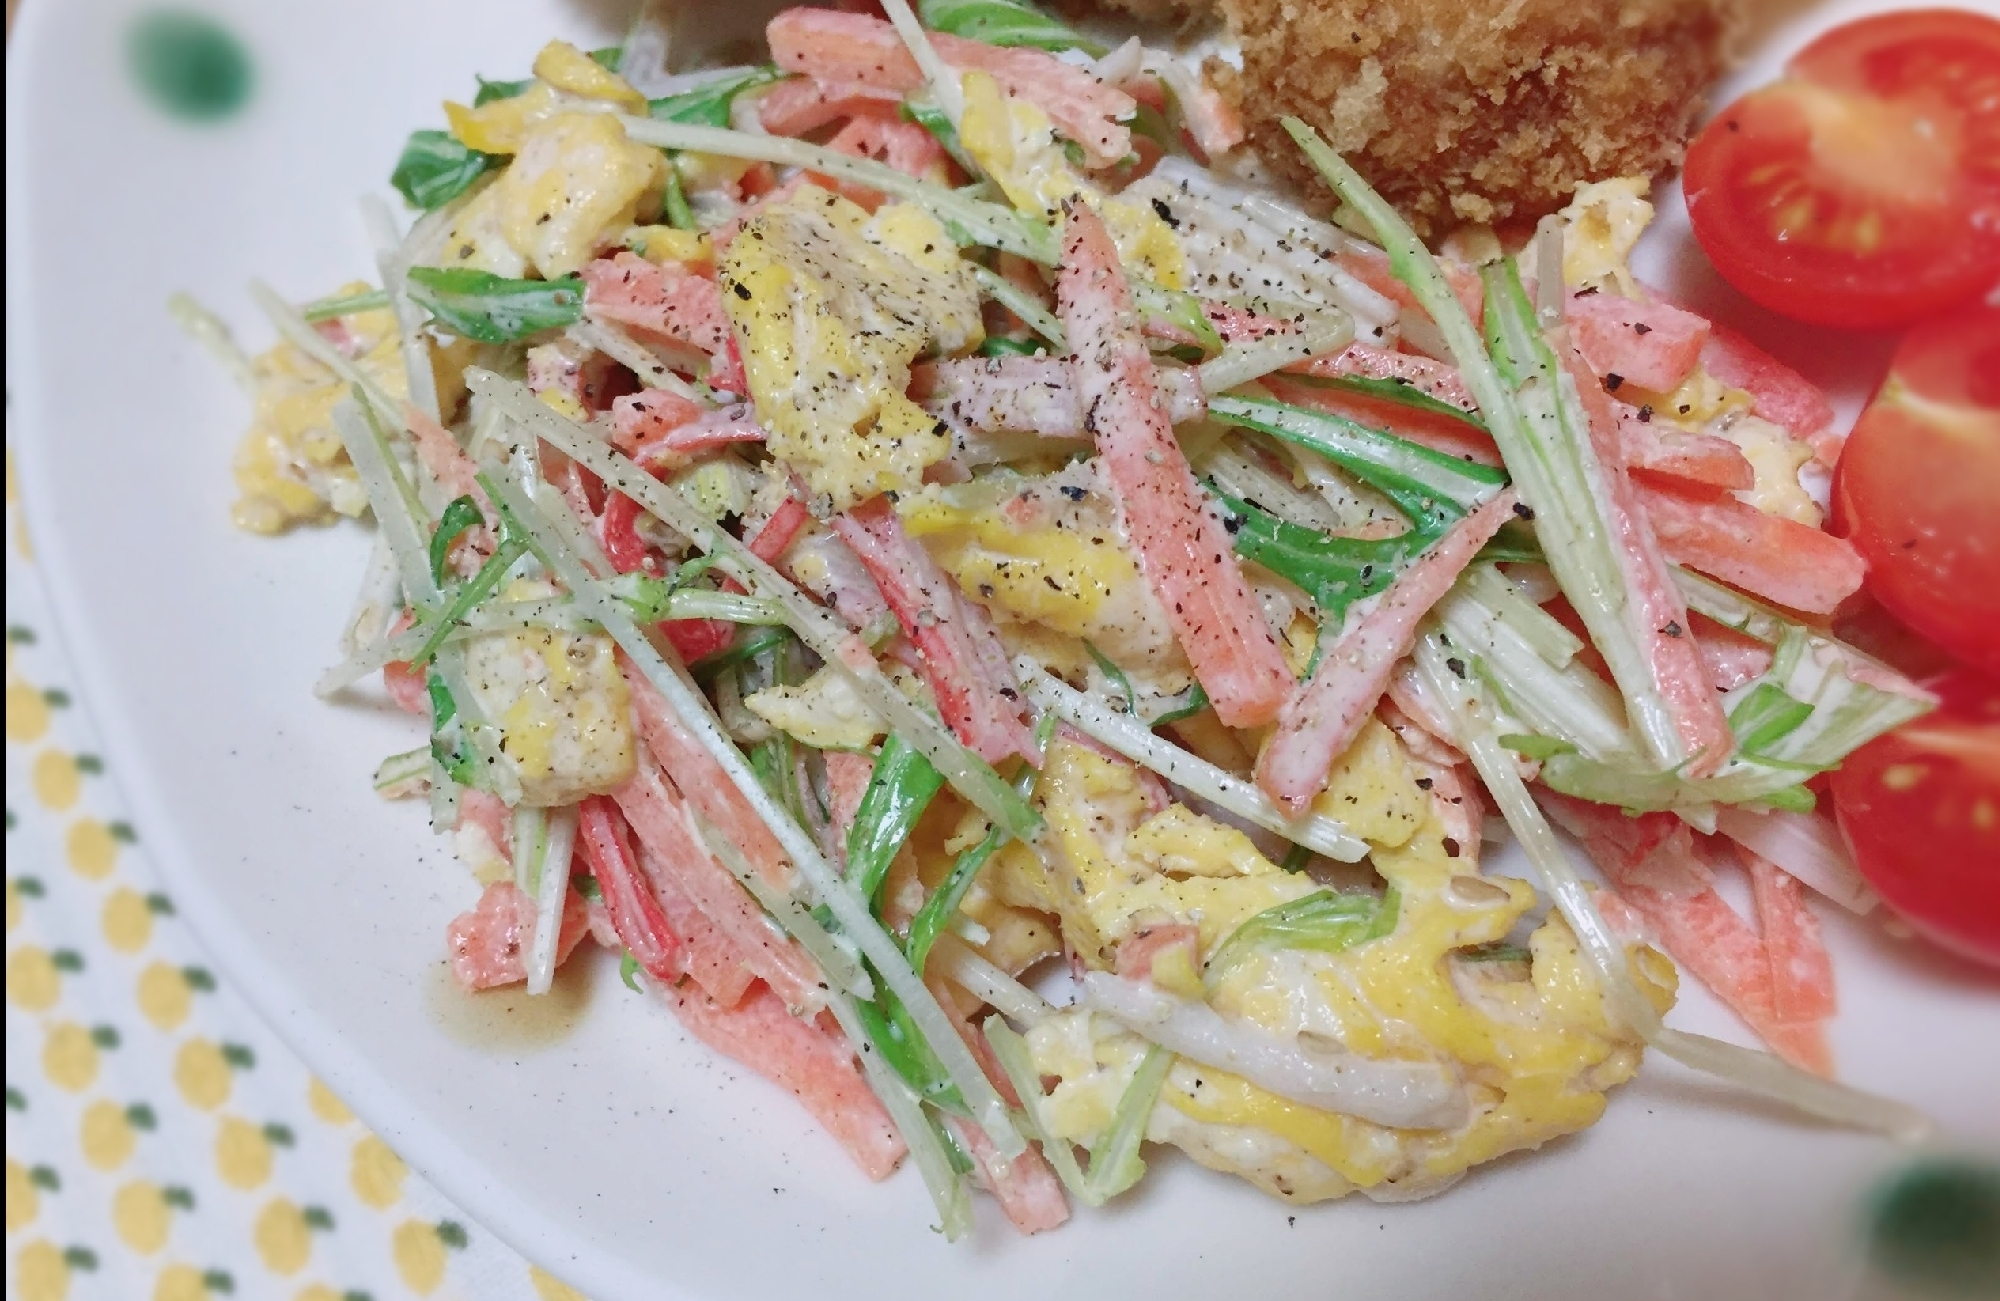 ゴママヨポン♡水菜と炒り卵のサラダ